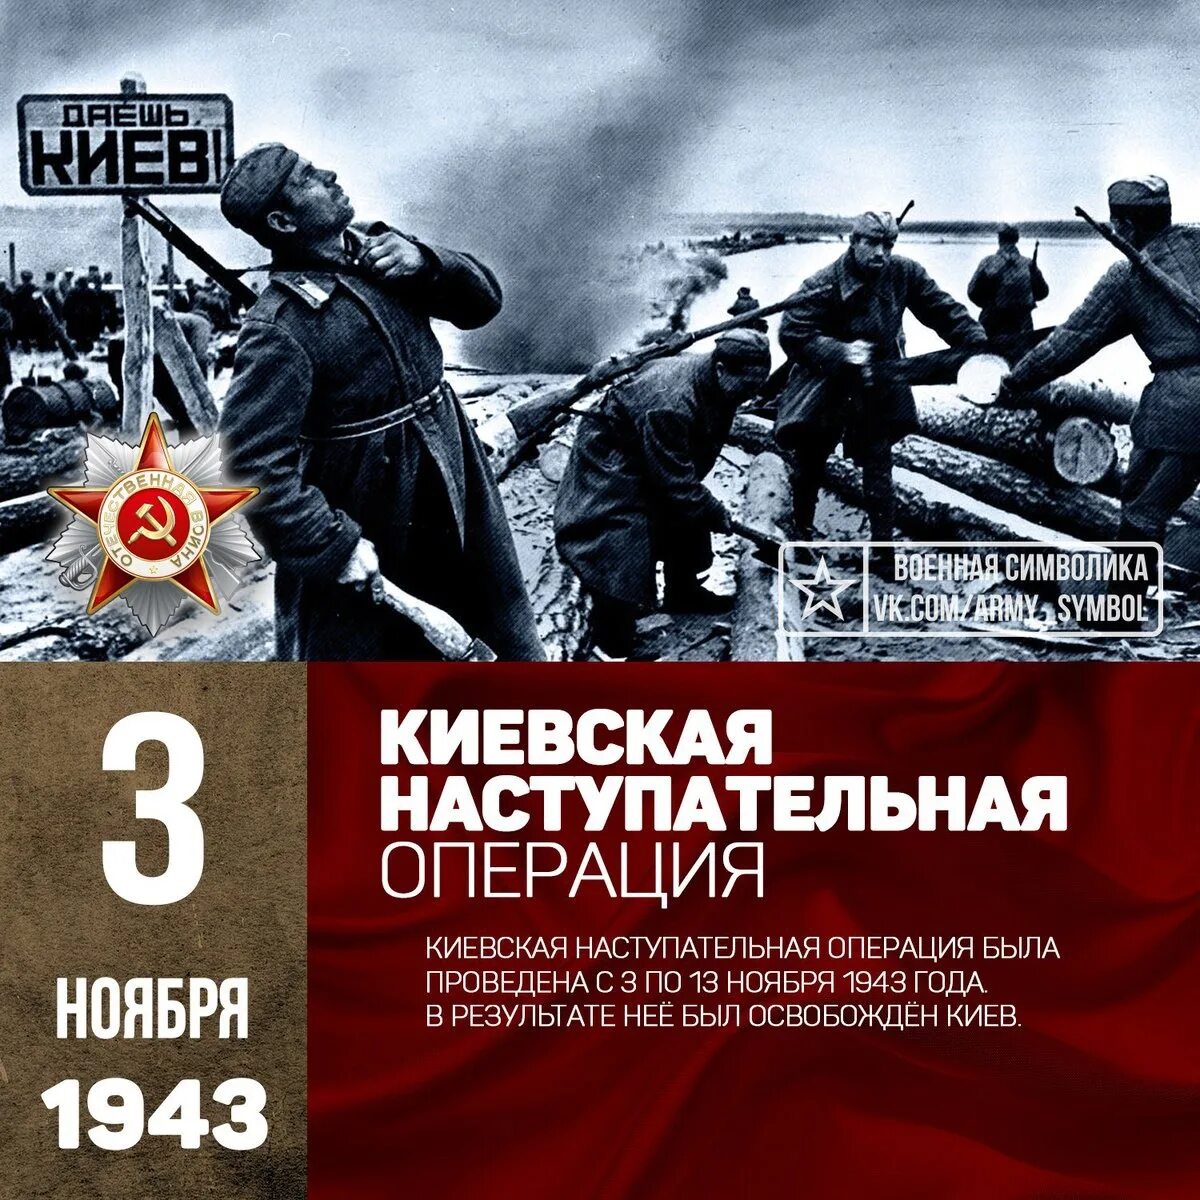 Дата освобождения киева. Киевская наступательная операция 3—13 ноября 1943. Киевская наступательная операция ноябрь 1943 года. Освобождение Киева 1943. Киевская наступательная операция (освобождение Киева) в 1943.